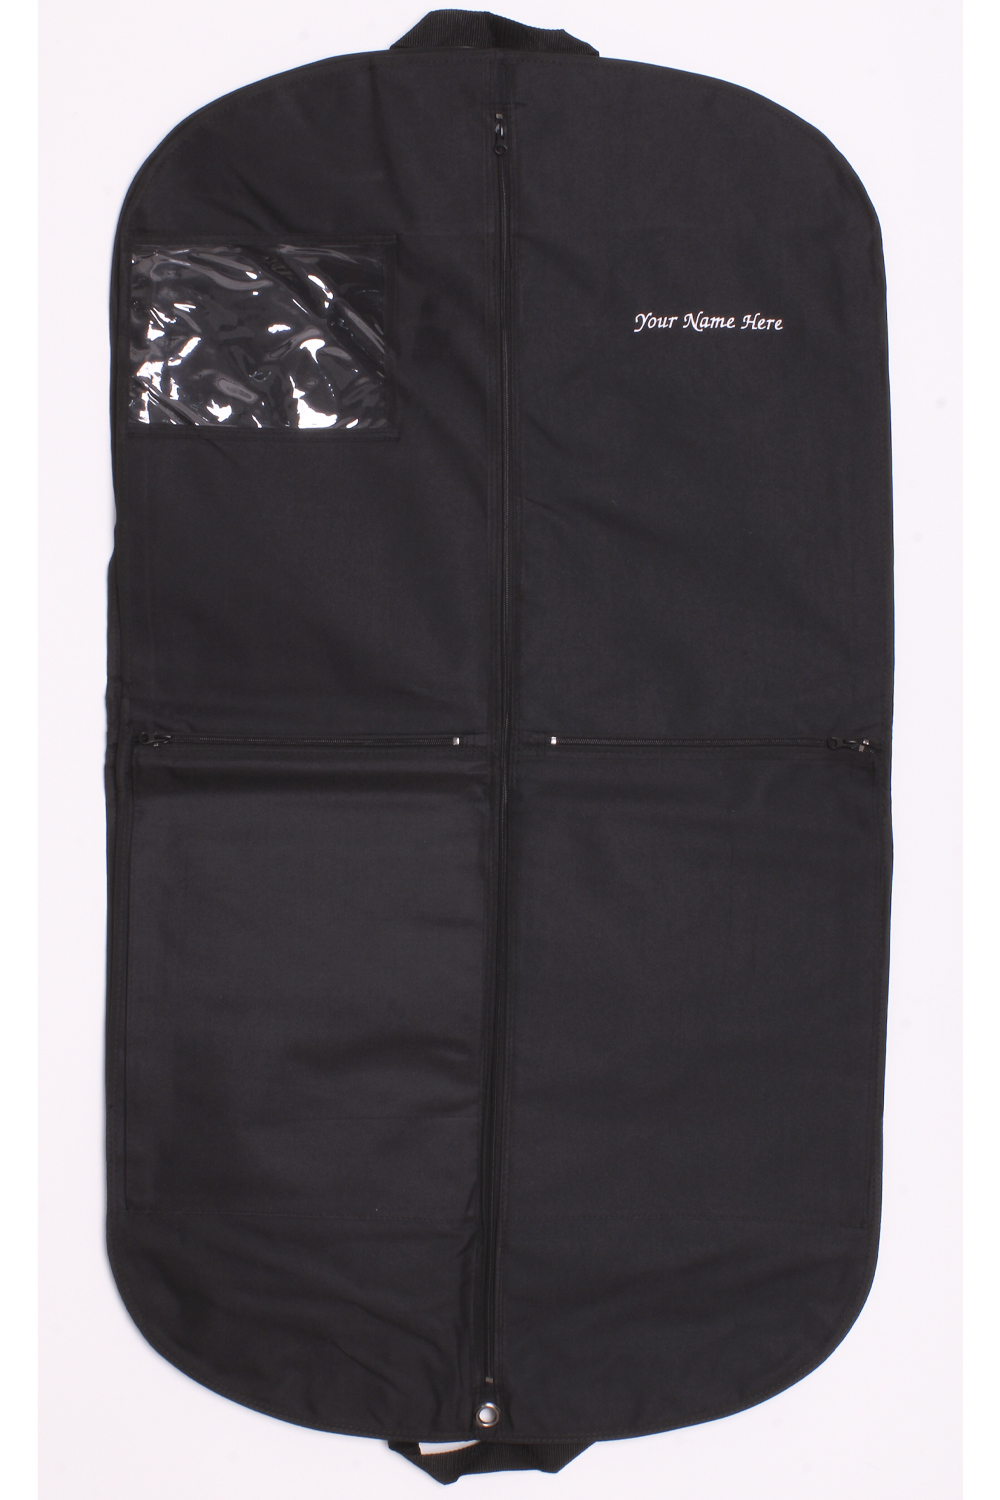 Kilt Outfit Carrier Bag - Inside, Unfolded